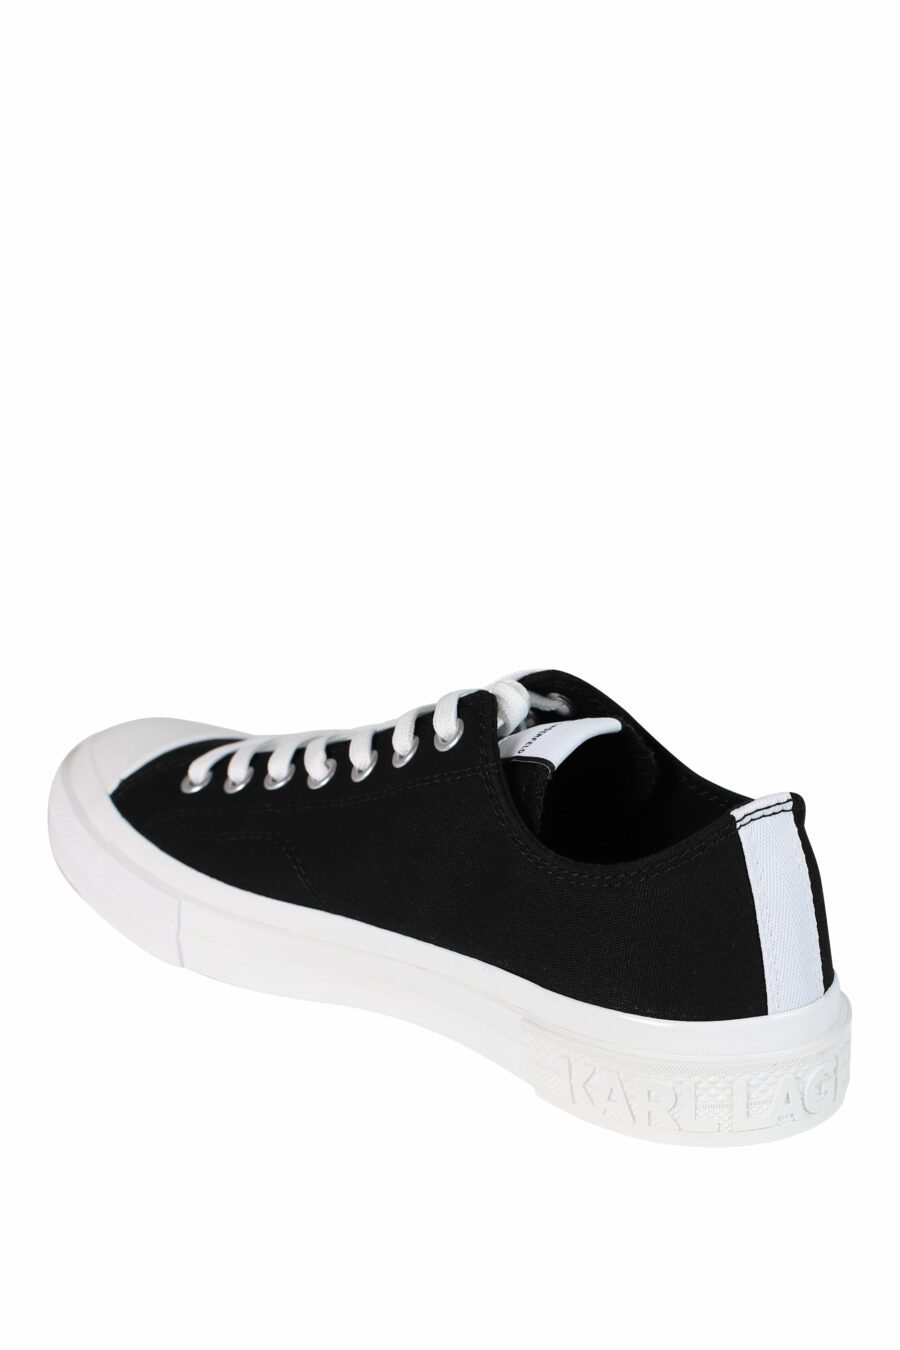 Zapatillas negras con logo "karl" y suela blanca - 5059529249655 4